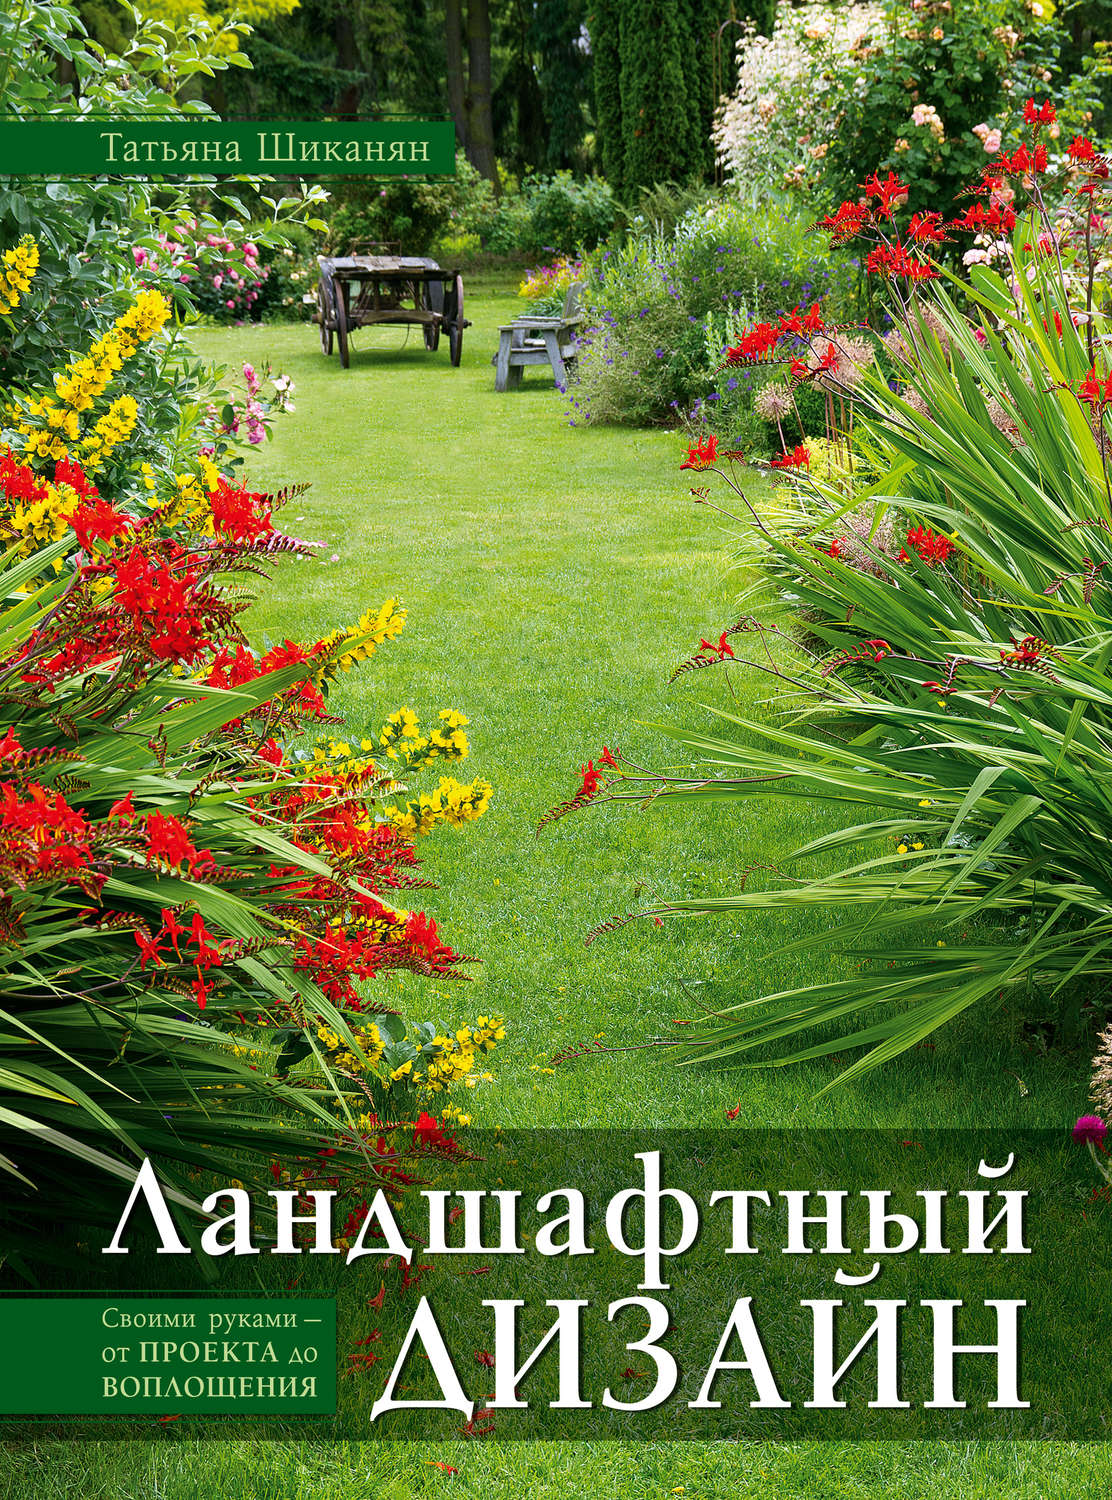 Электронные книги сад огород скачать бесплатно